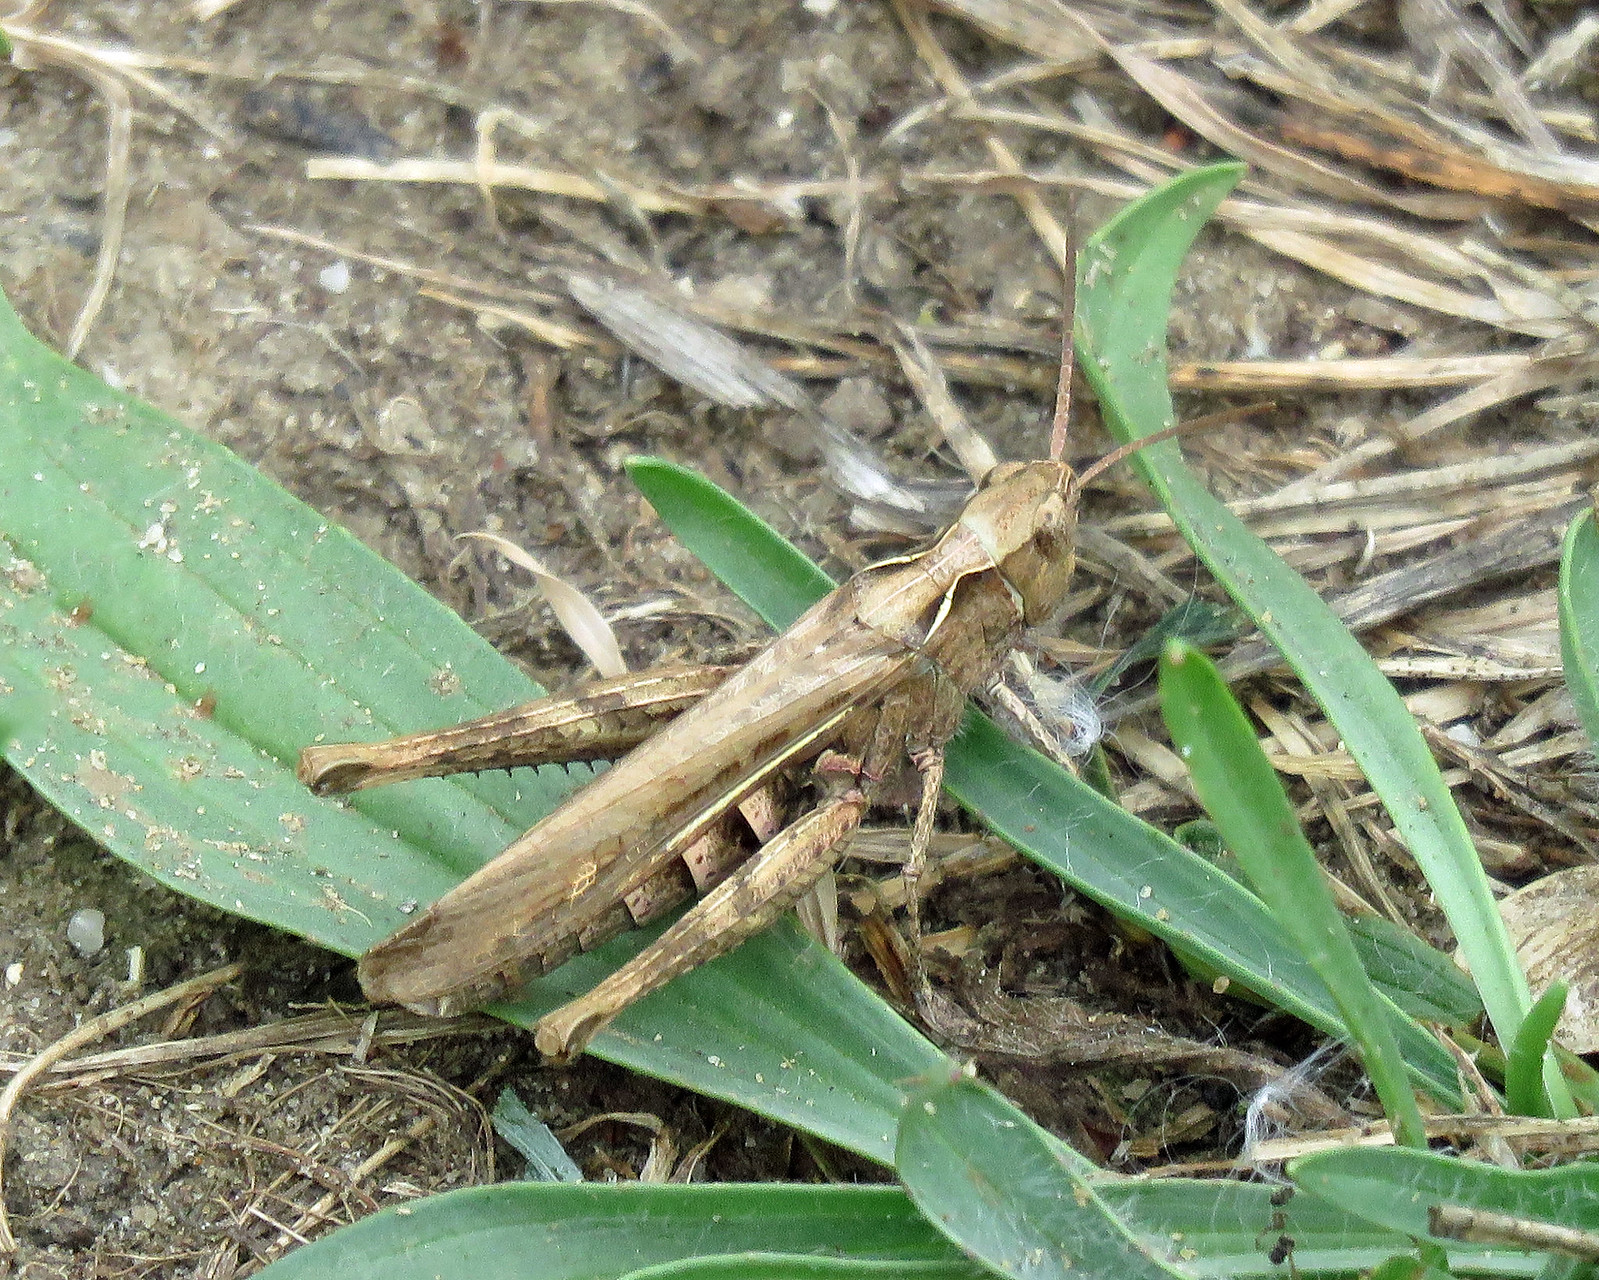 Field Grasshopper - Chorthippus brunneus